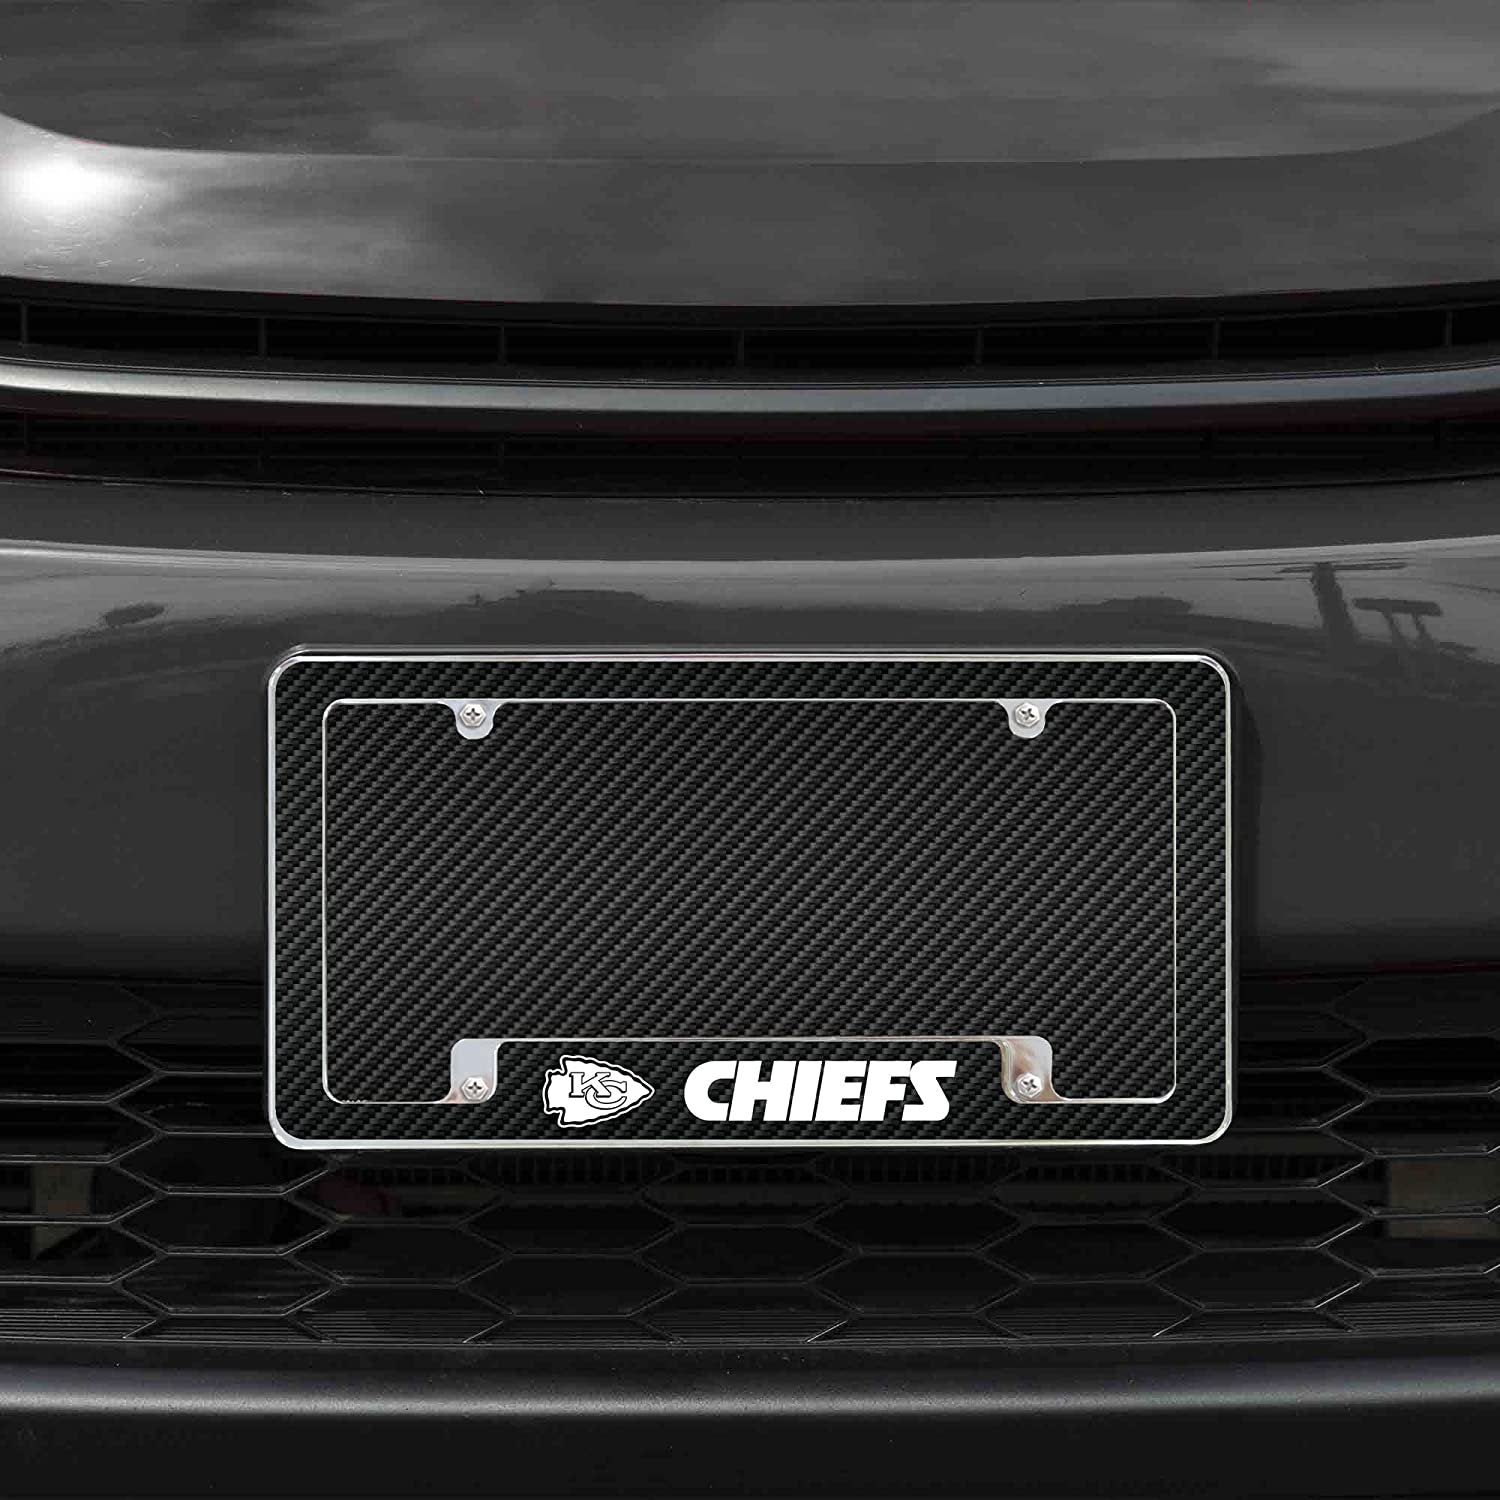 Kansas City Chiefs Metal License Plate Frame Chrome Tag Cover Carbon Fiber Design 6x12 Inch